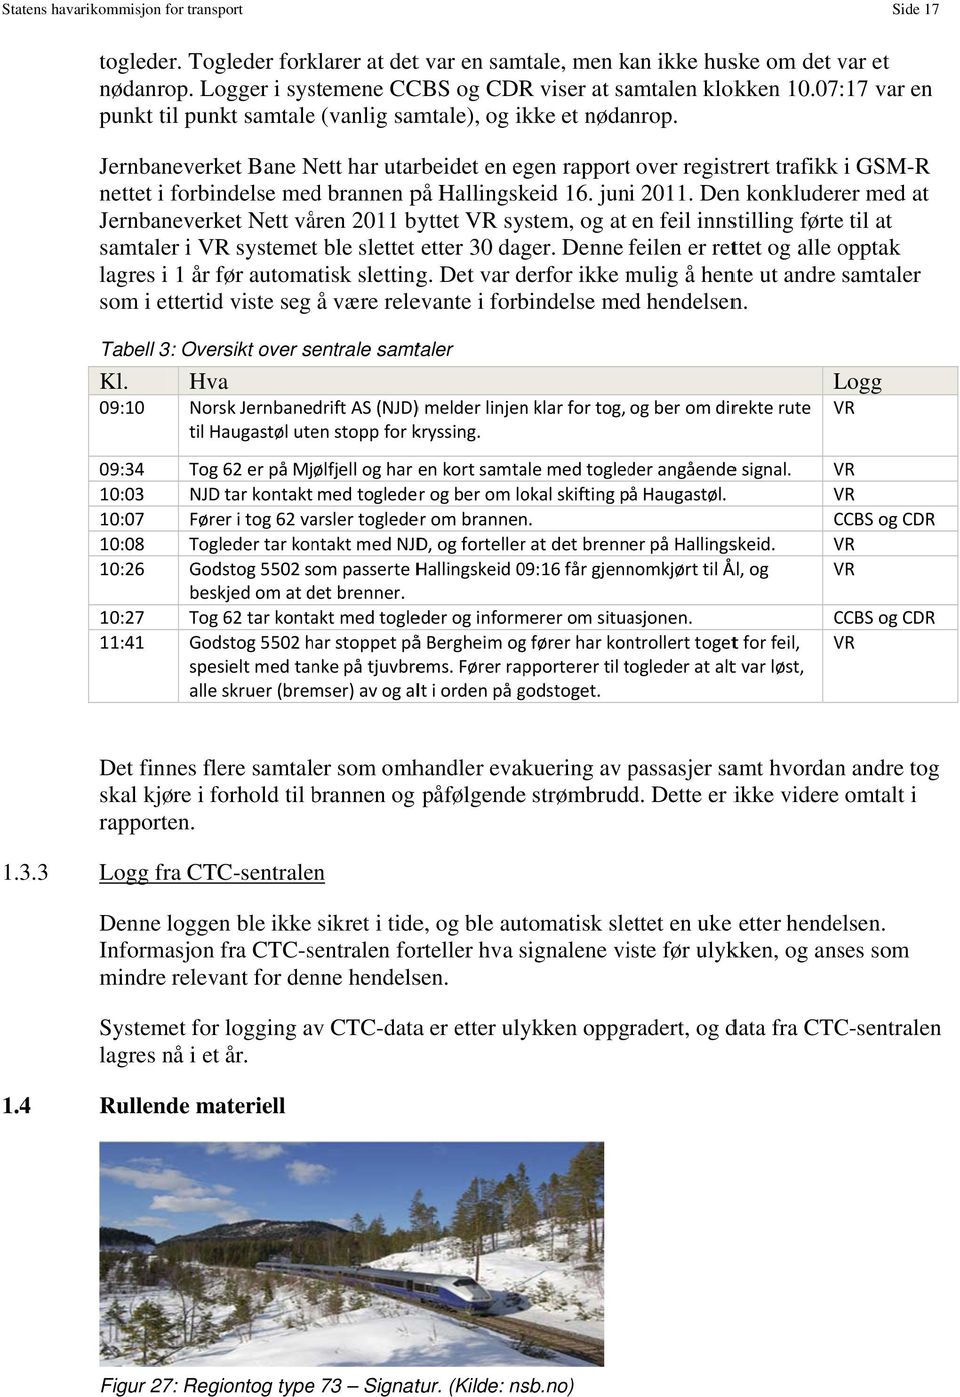 Jernbaneverket Bane Nett har utarbeidet en egen rapportt over registrert trafikk i GSM-R nettet i forbindelse med brannen på Hallingskeid 16. juni 2011.